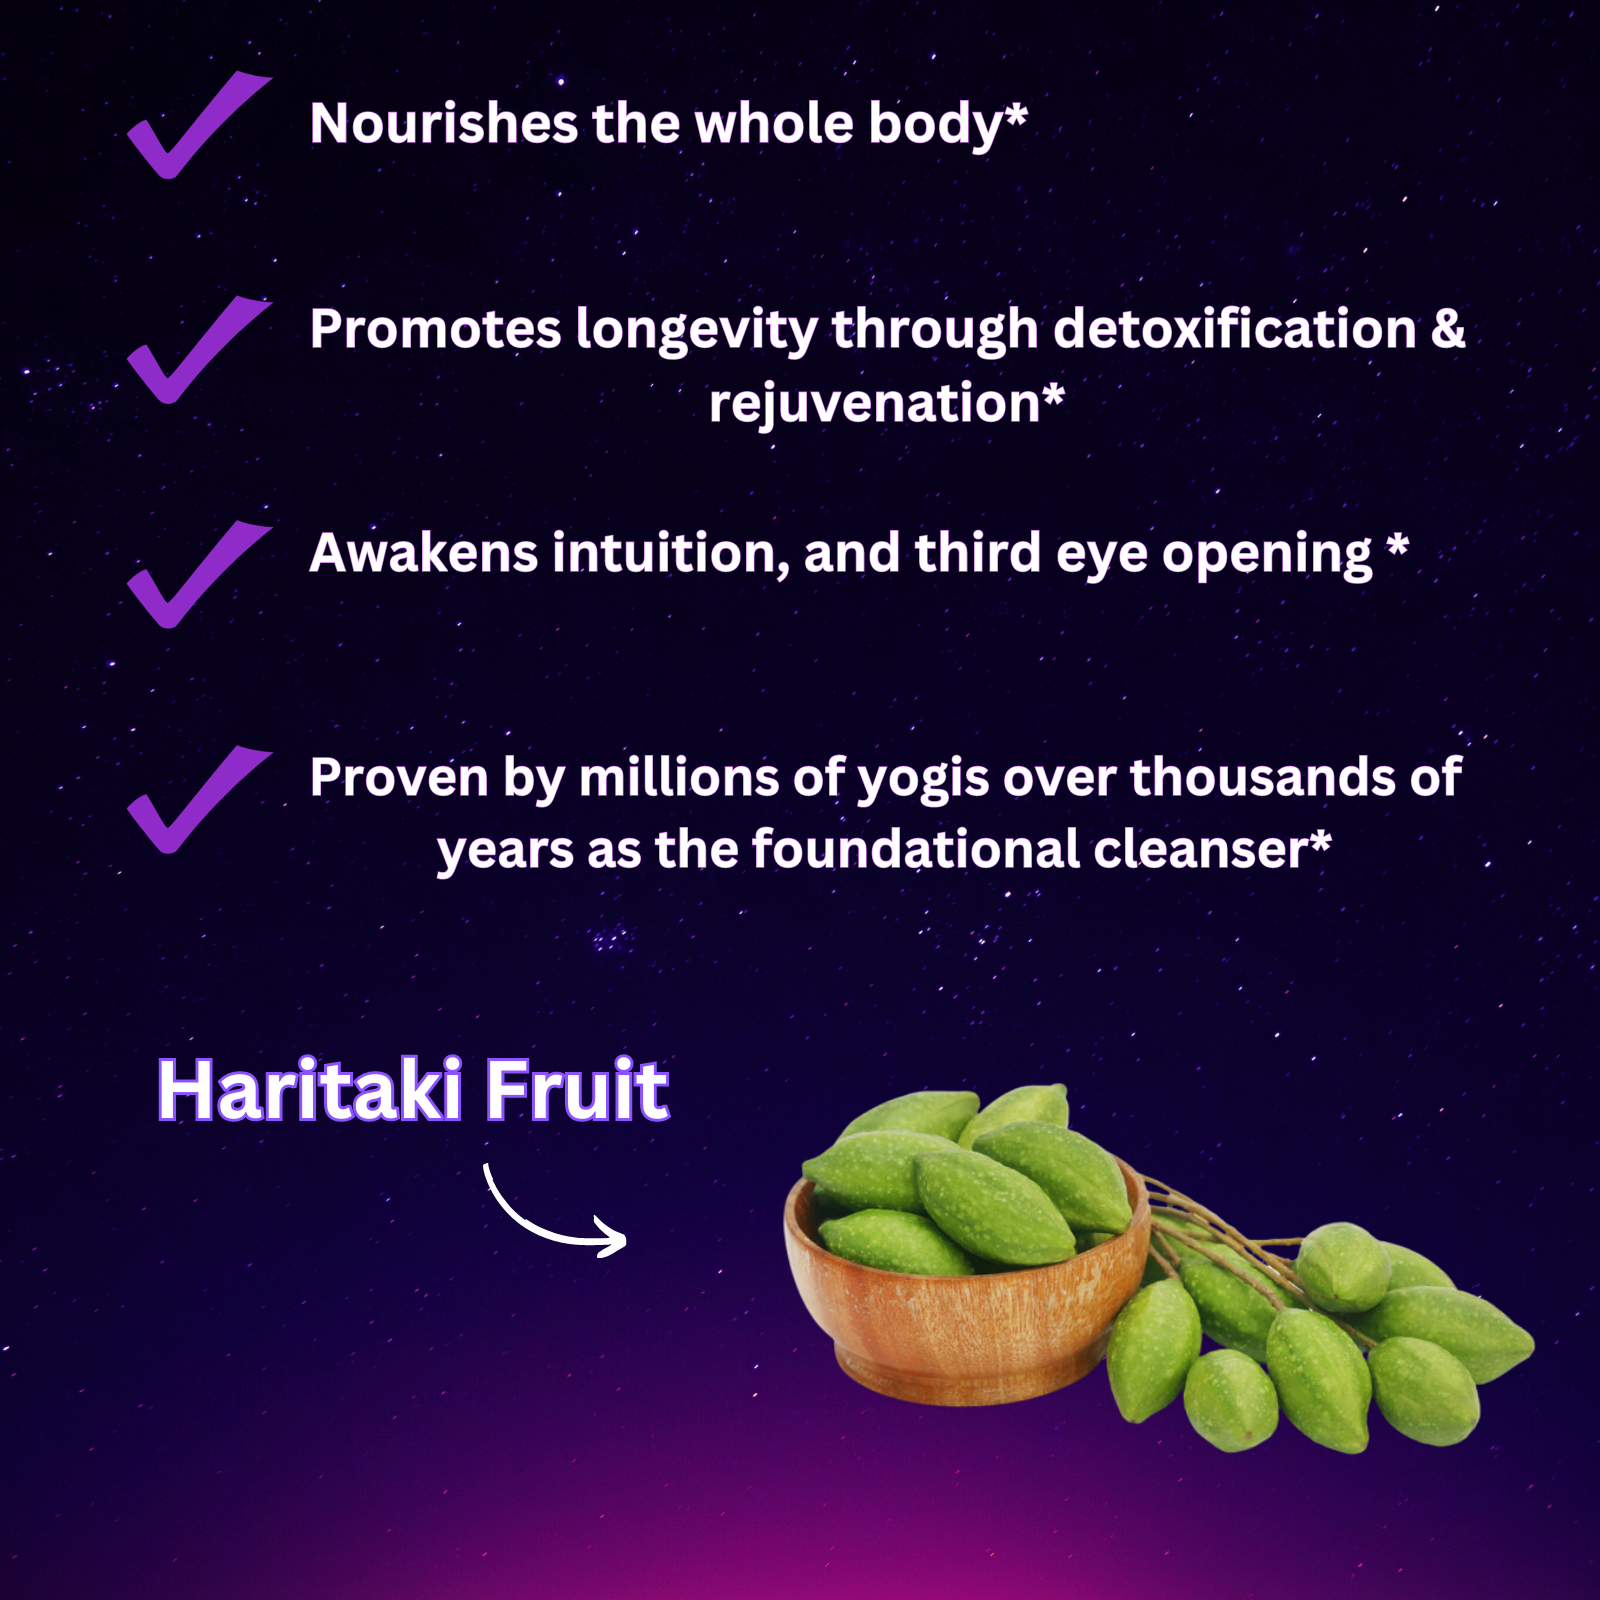 haritaki fruit herb supplement benefits 